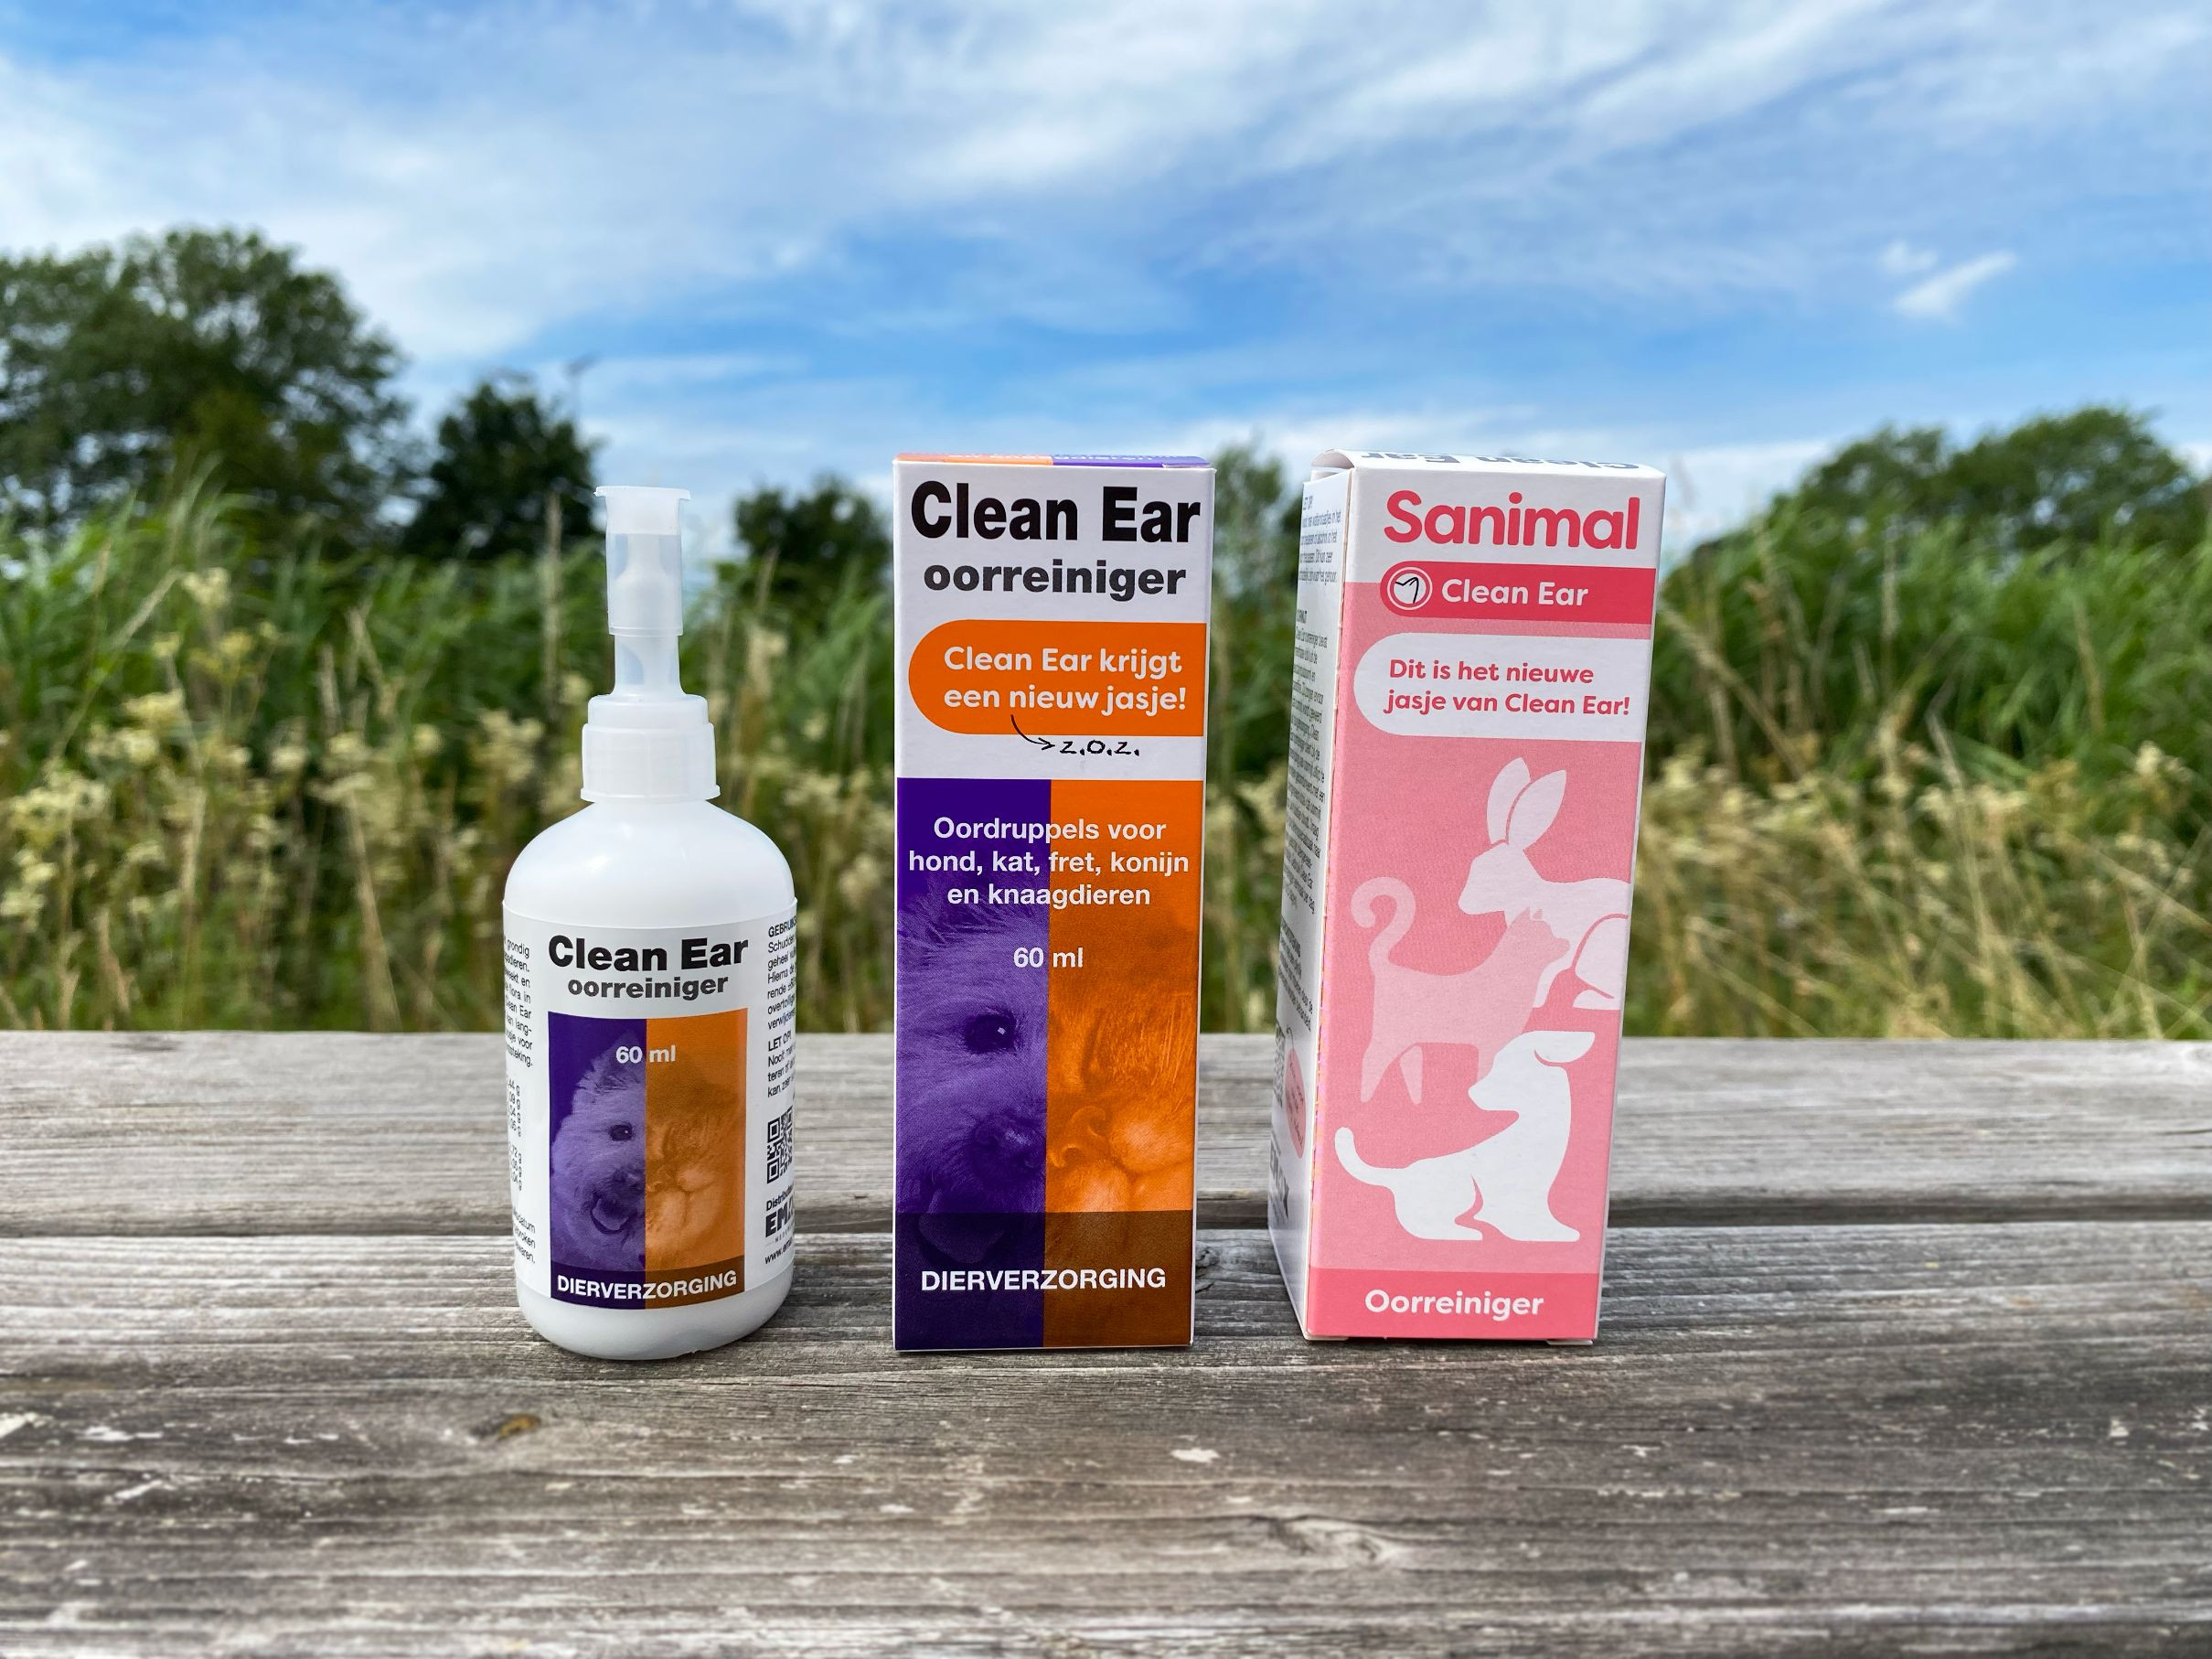 Sanimal Clean Ear Oorreiniger